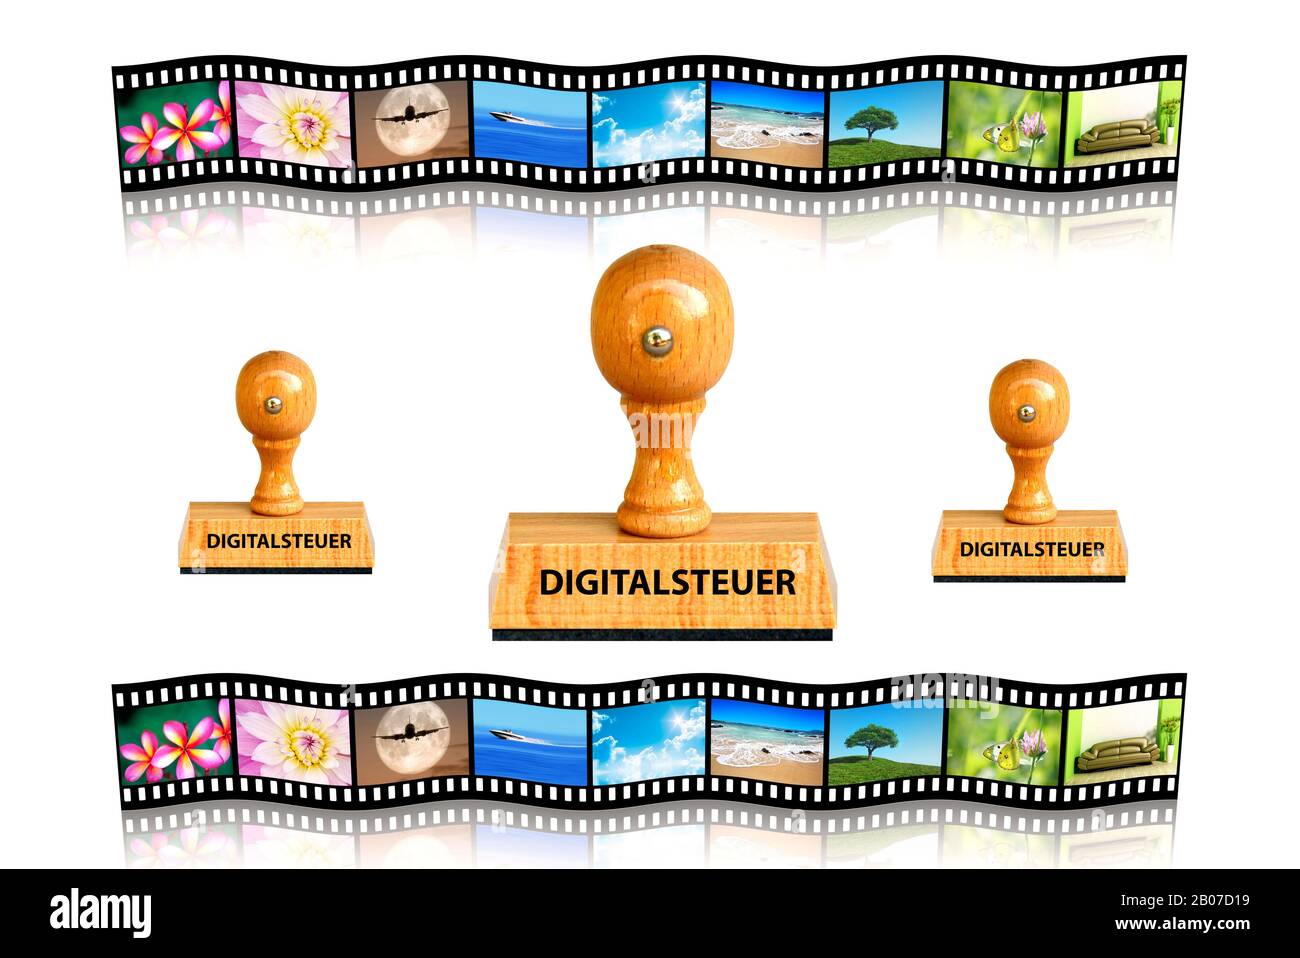 Letras de sellos Digitalsteuer, impuesto digital, película de diapositivas en el fondo, Alemania Foto de stock